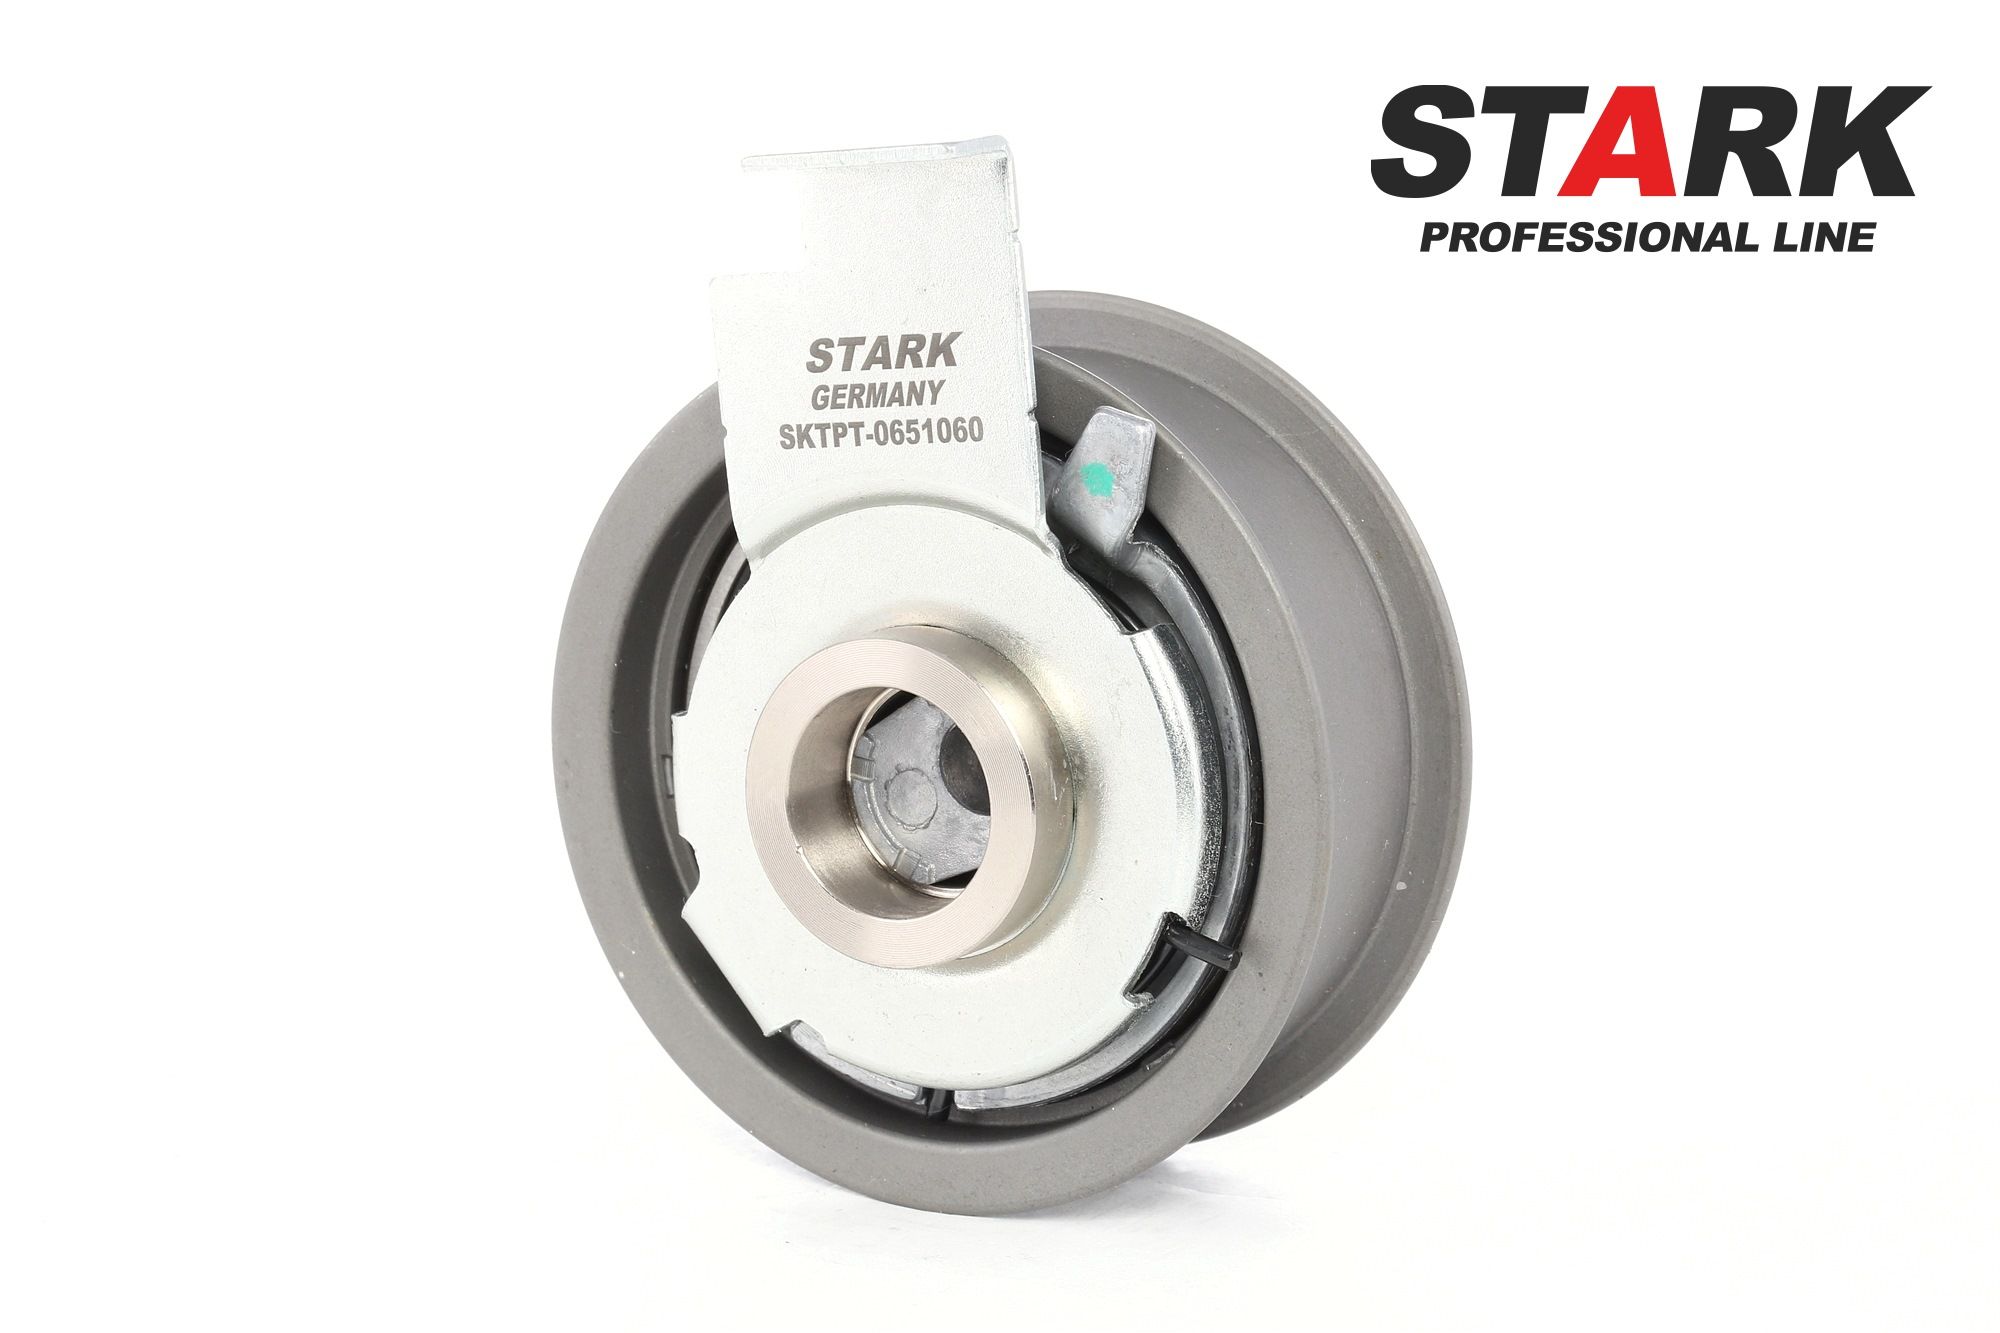 SKTPT-0650160 STARK Timing belt idler pulley VW